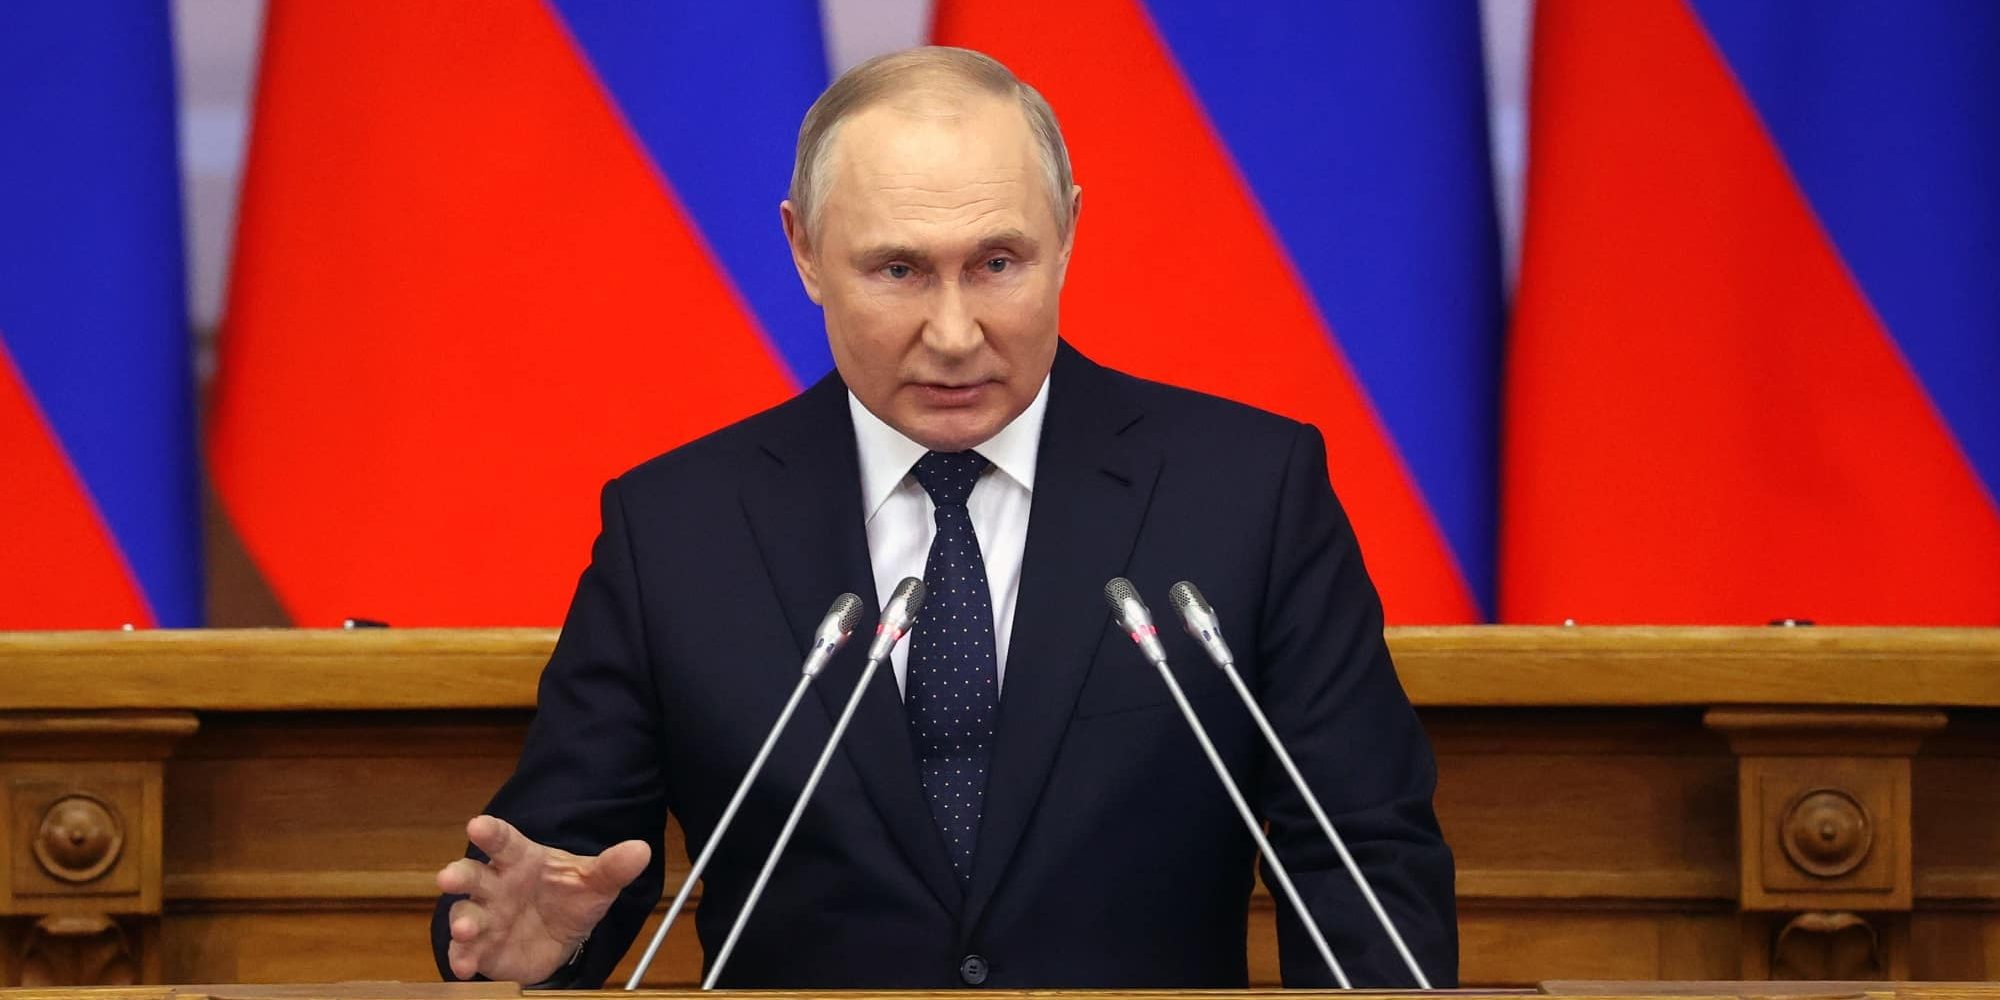 Ο πρόεδρος της Ρωσίας Βλαντιμίρ Πούτιν